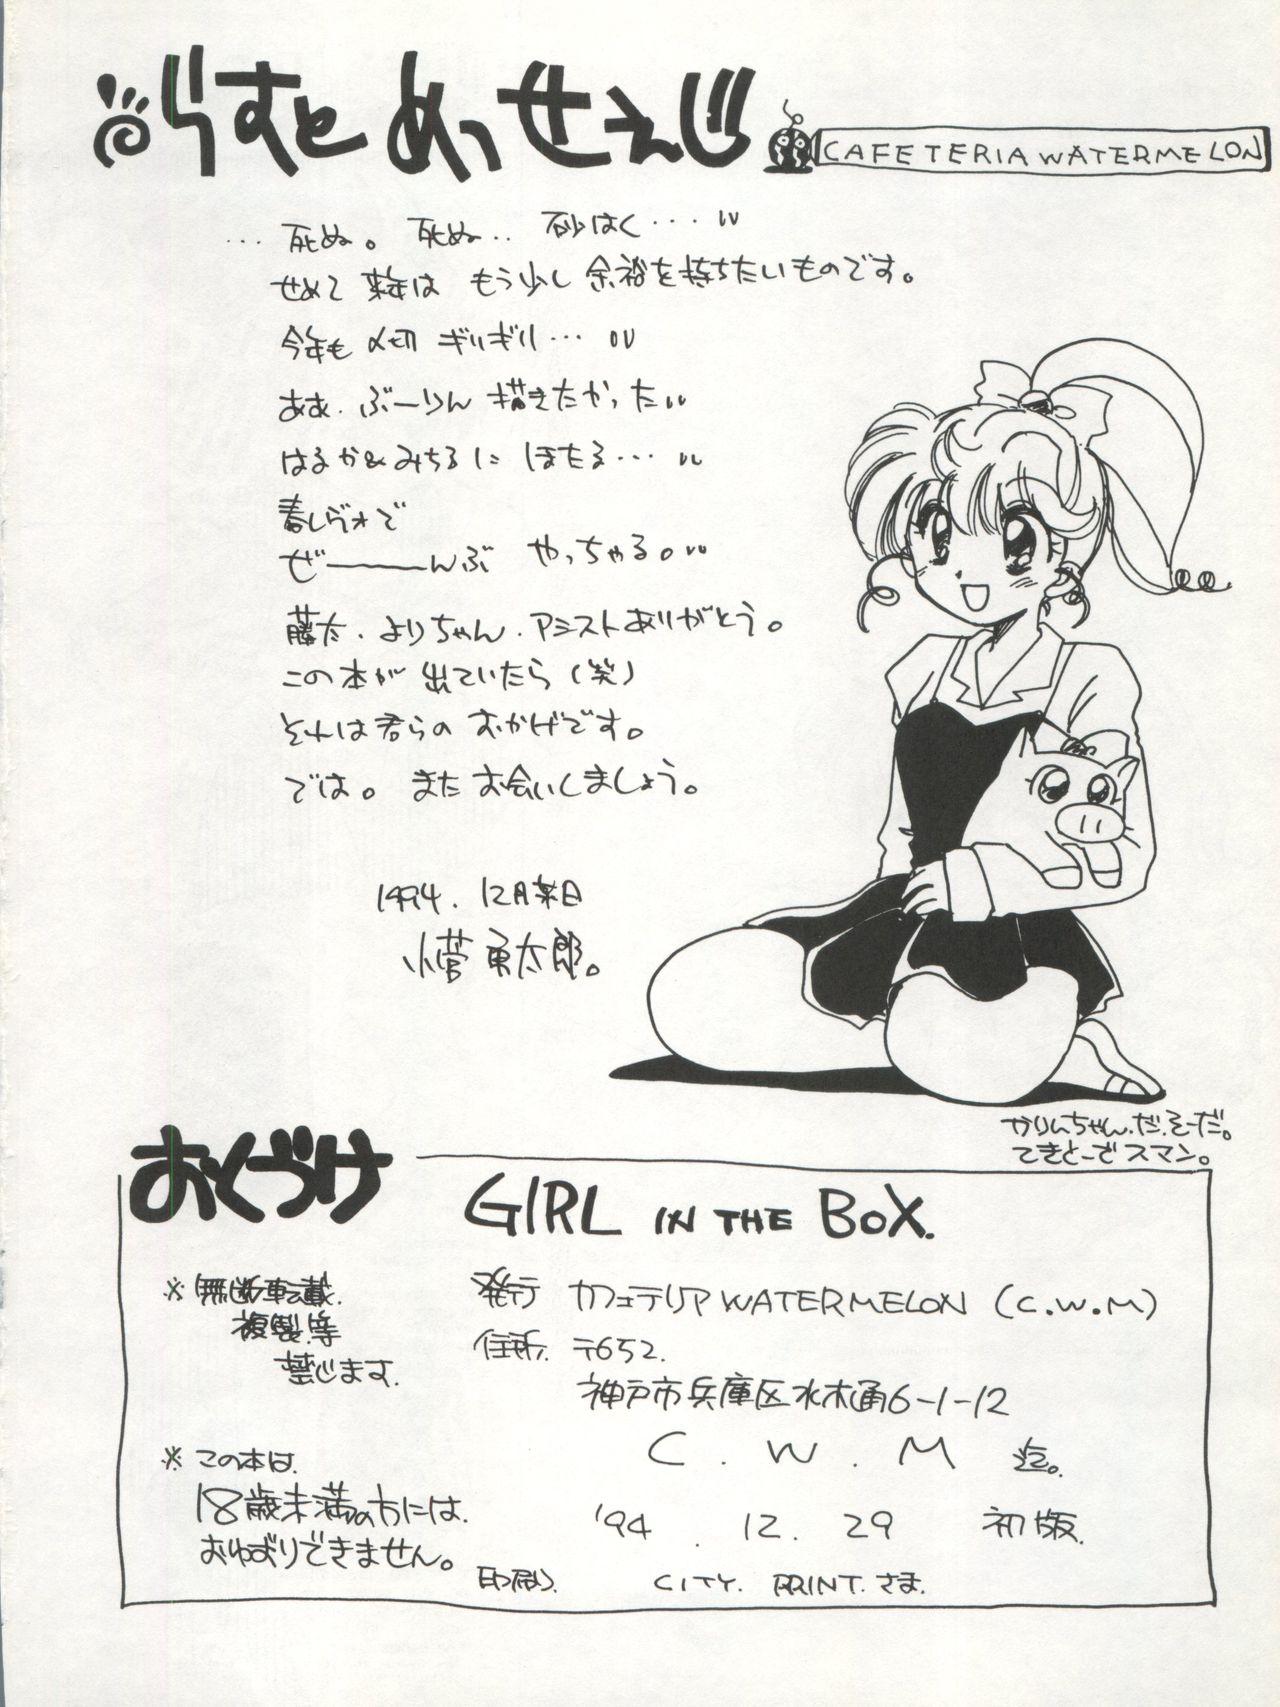 GIRL IN THE BOX 25